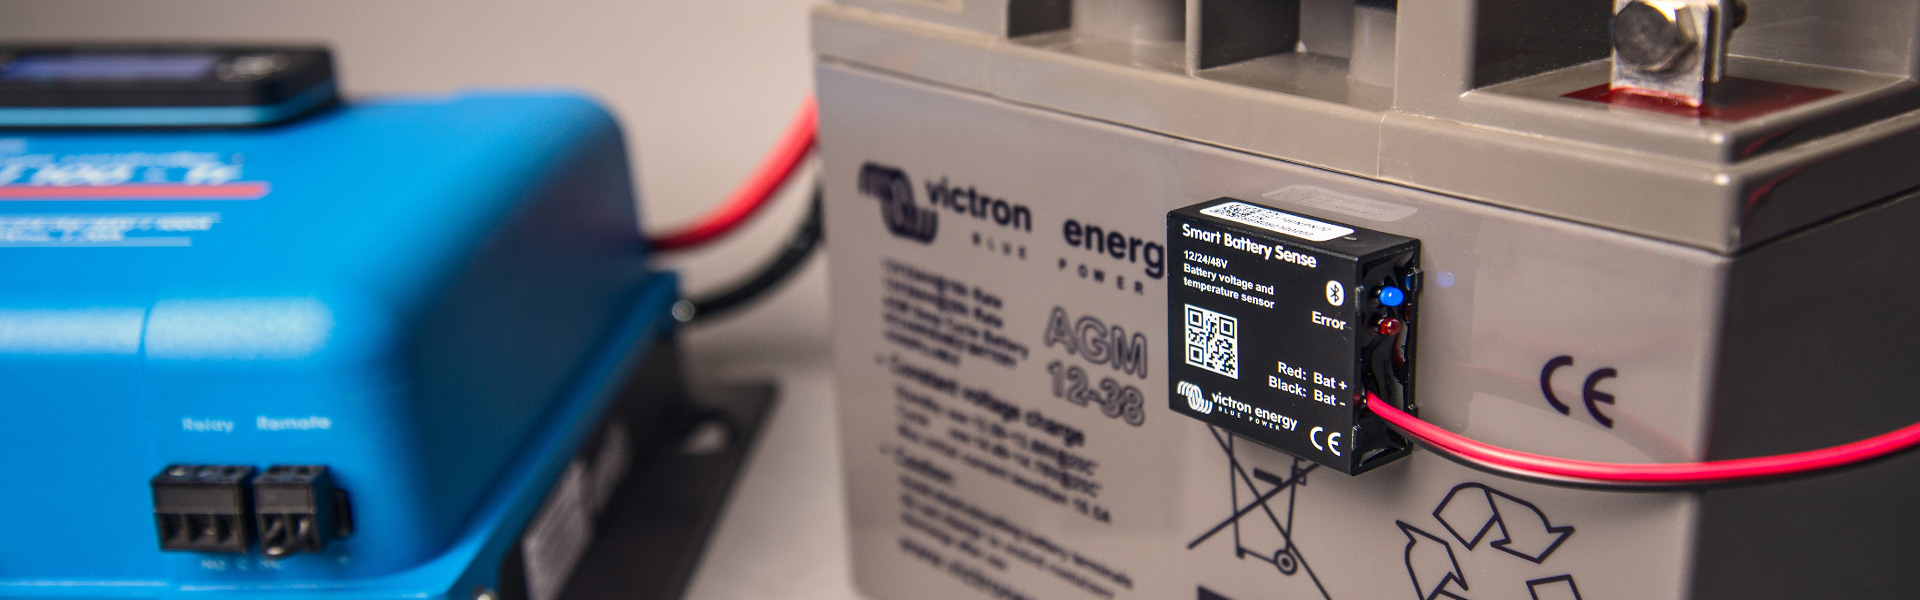 Умный датчик батареи - Smart Battery Sense